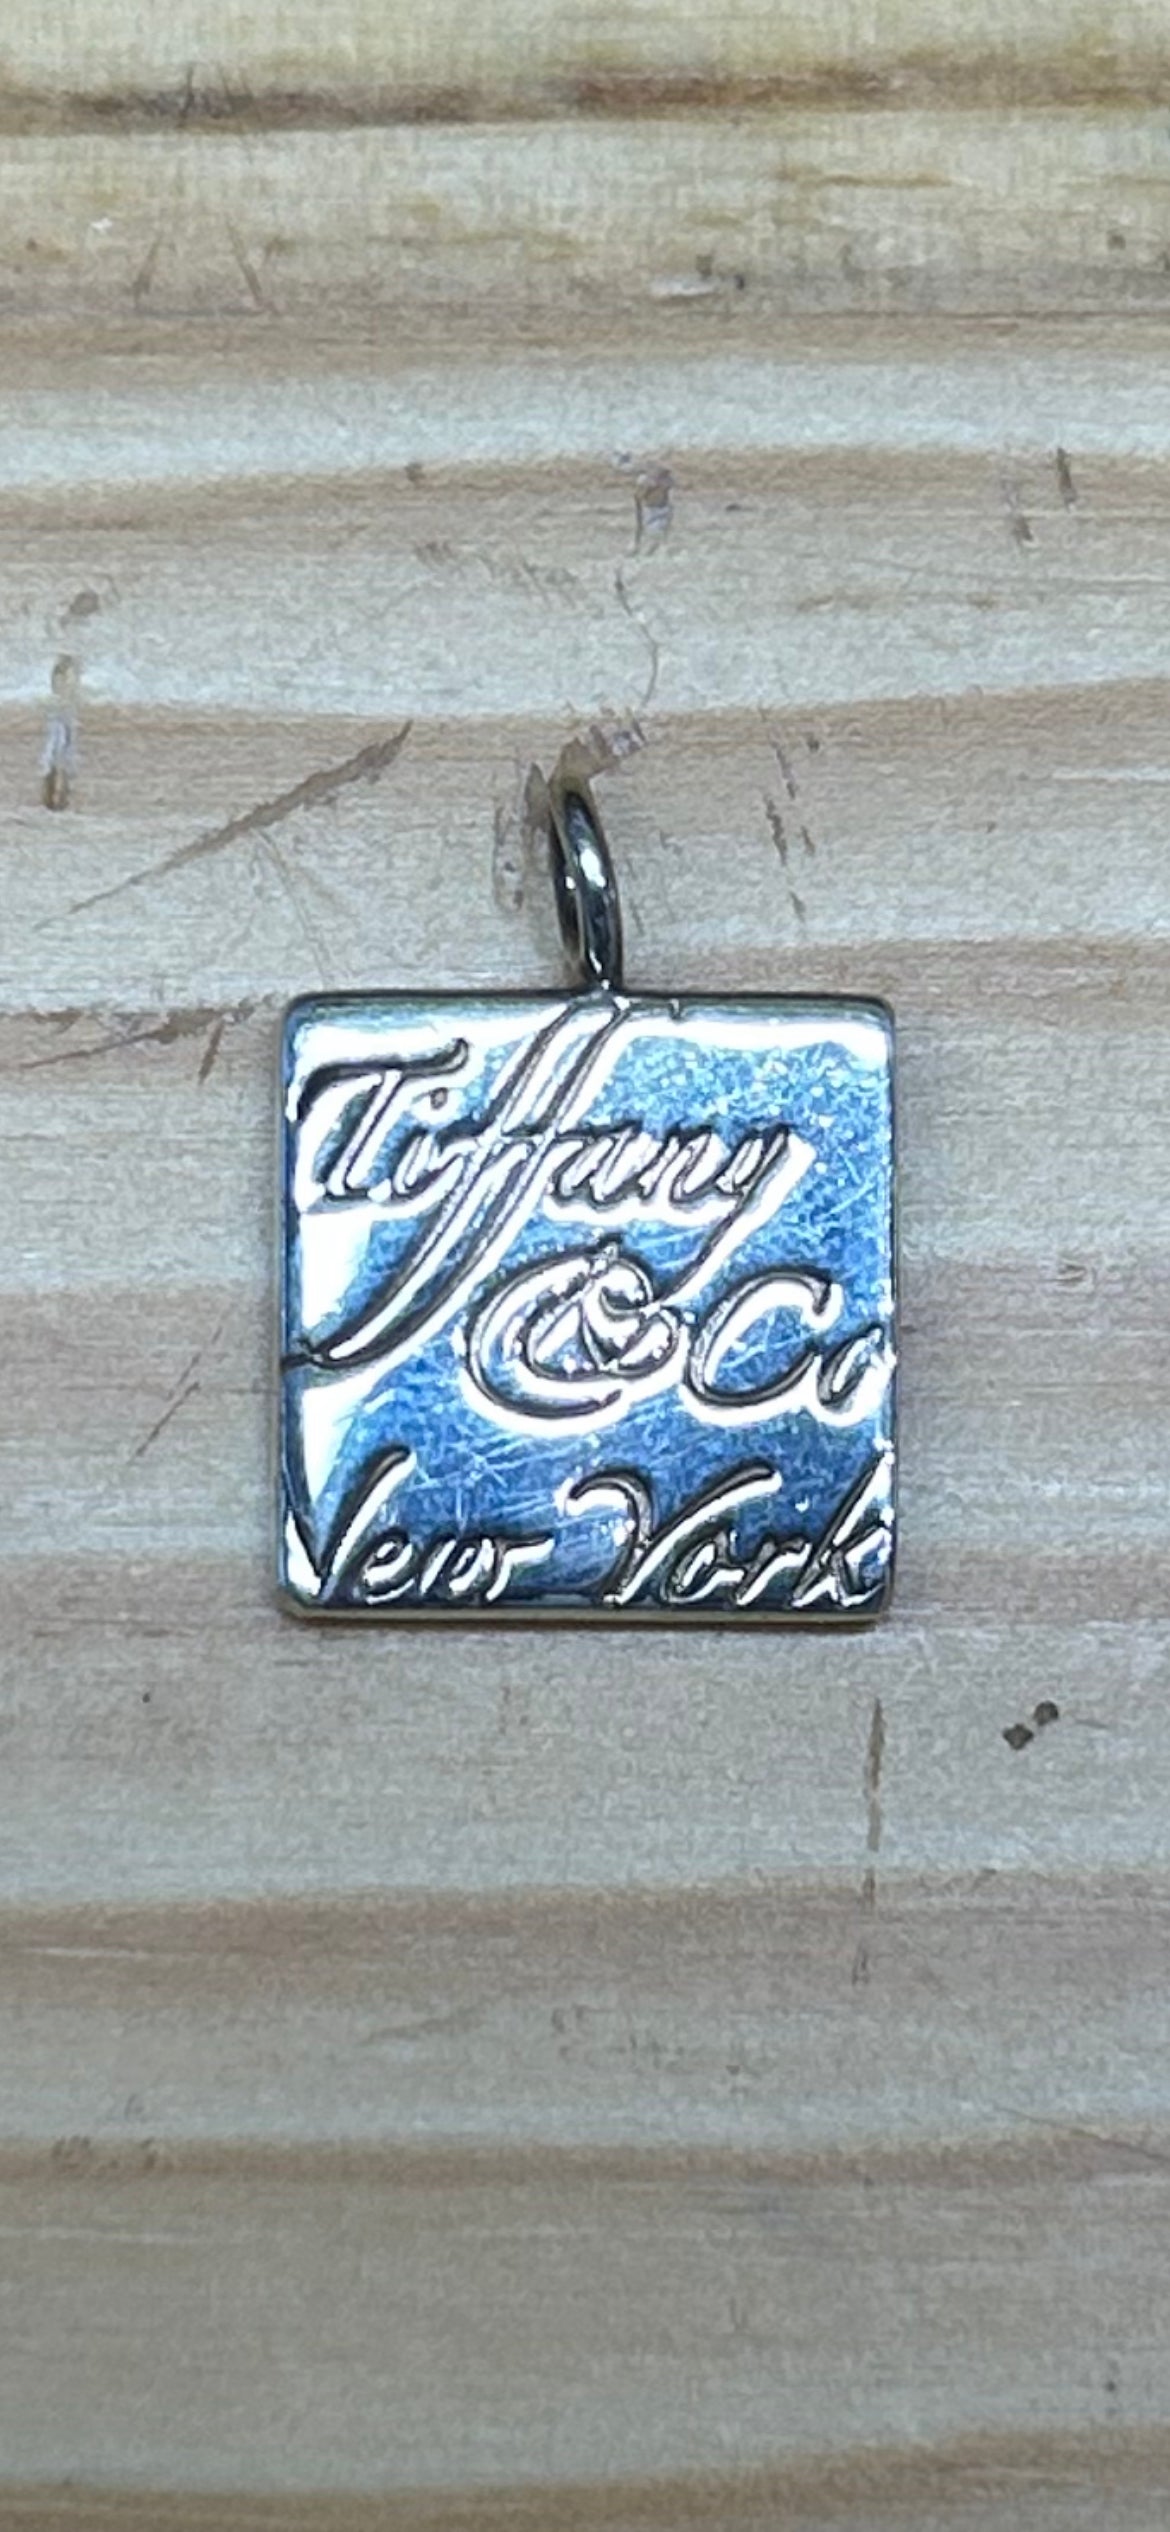 Tiffany & Co.: 925 Key Chain, Tiffany Charm "Tiffany & Co New York", Elsa Peretti Chain and Heart with Diamond 925, Tiffany 925 Chain